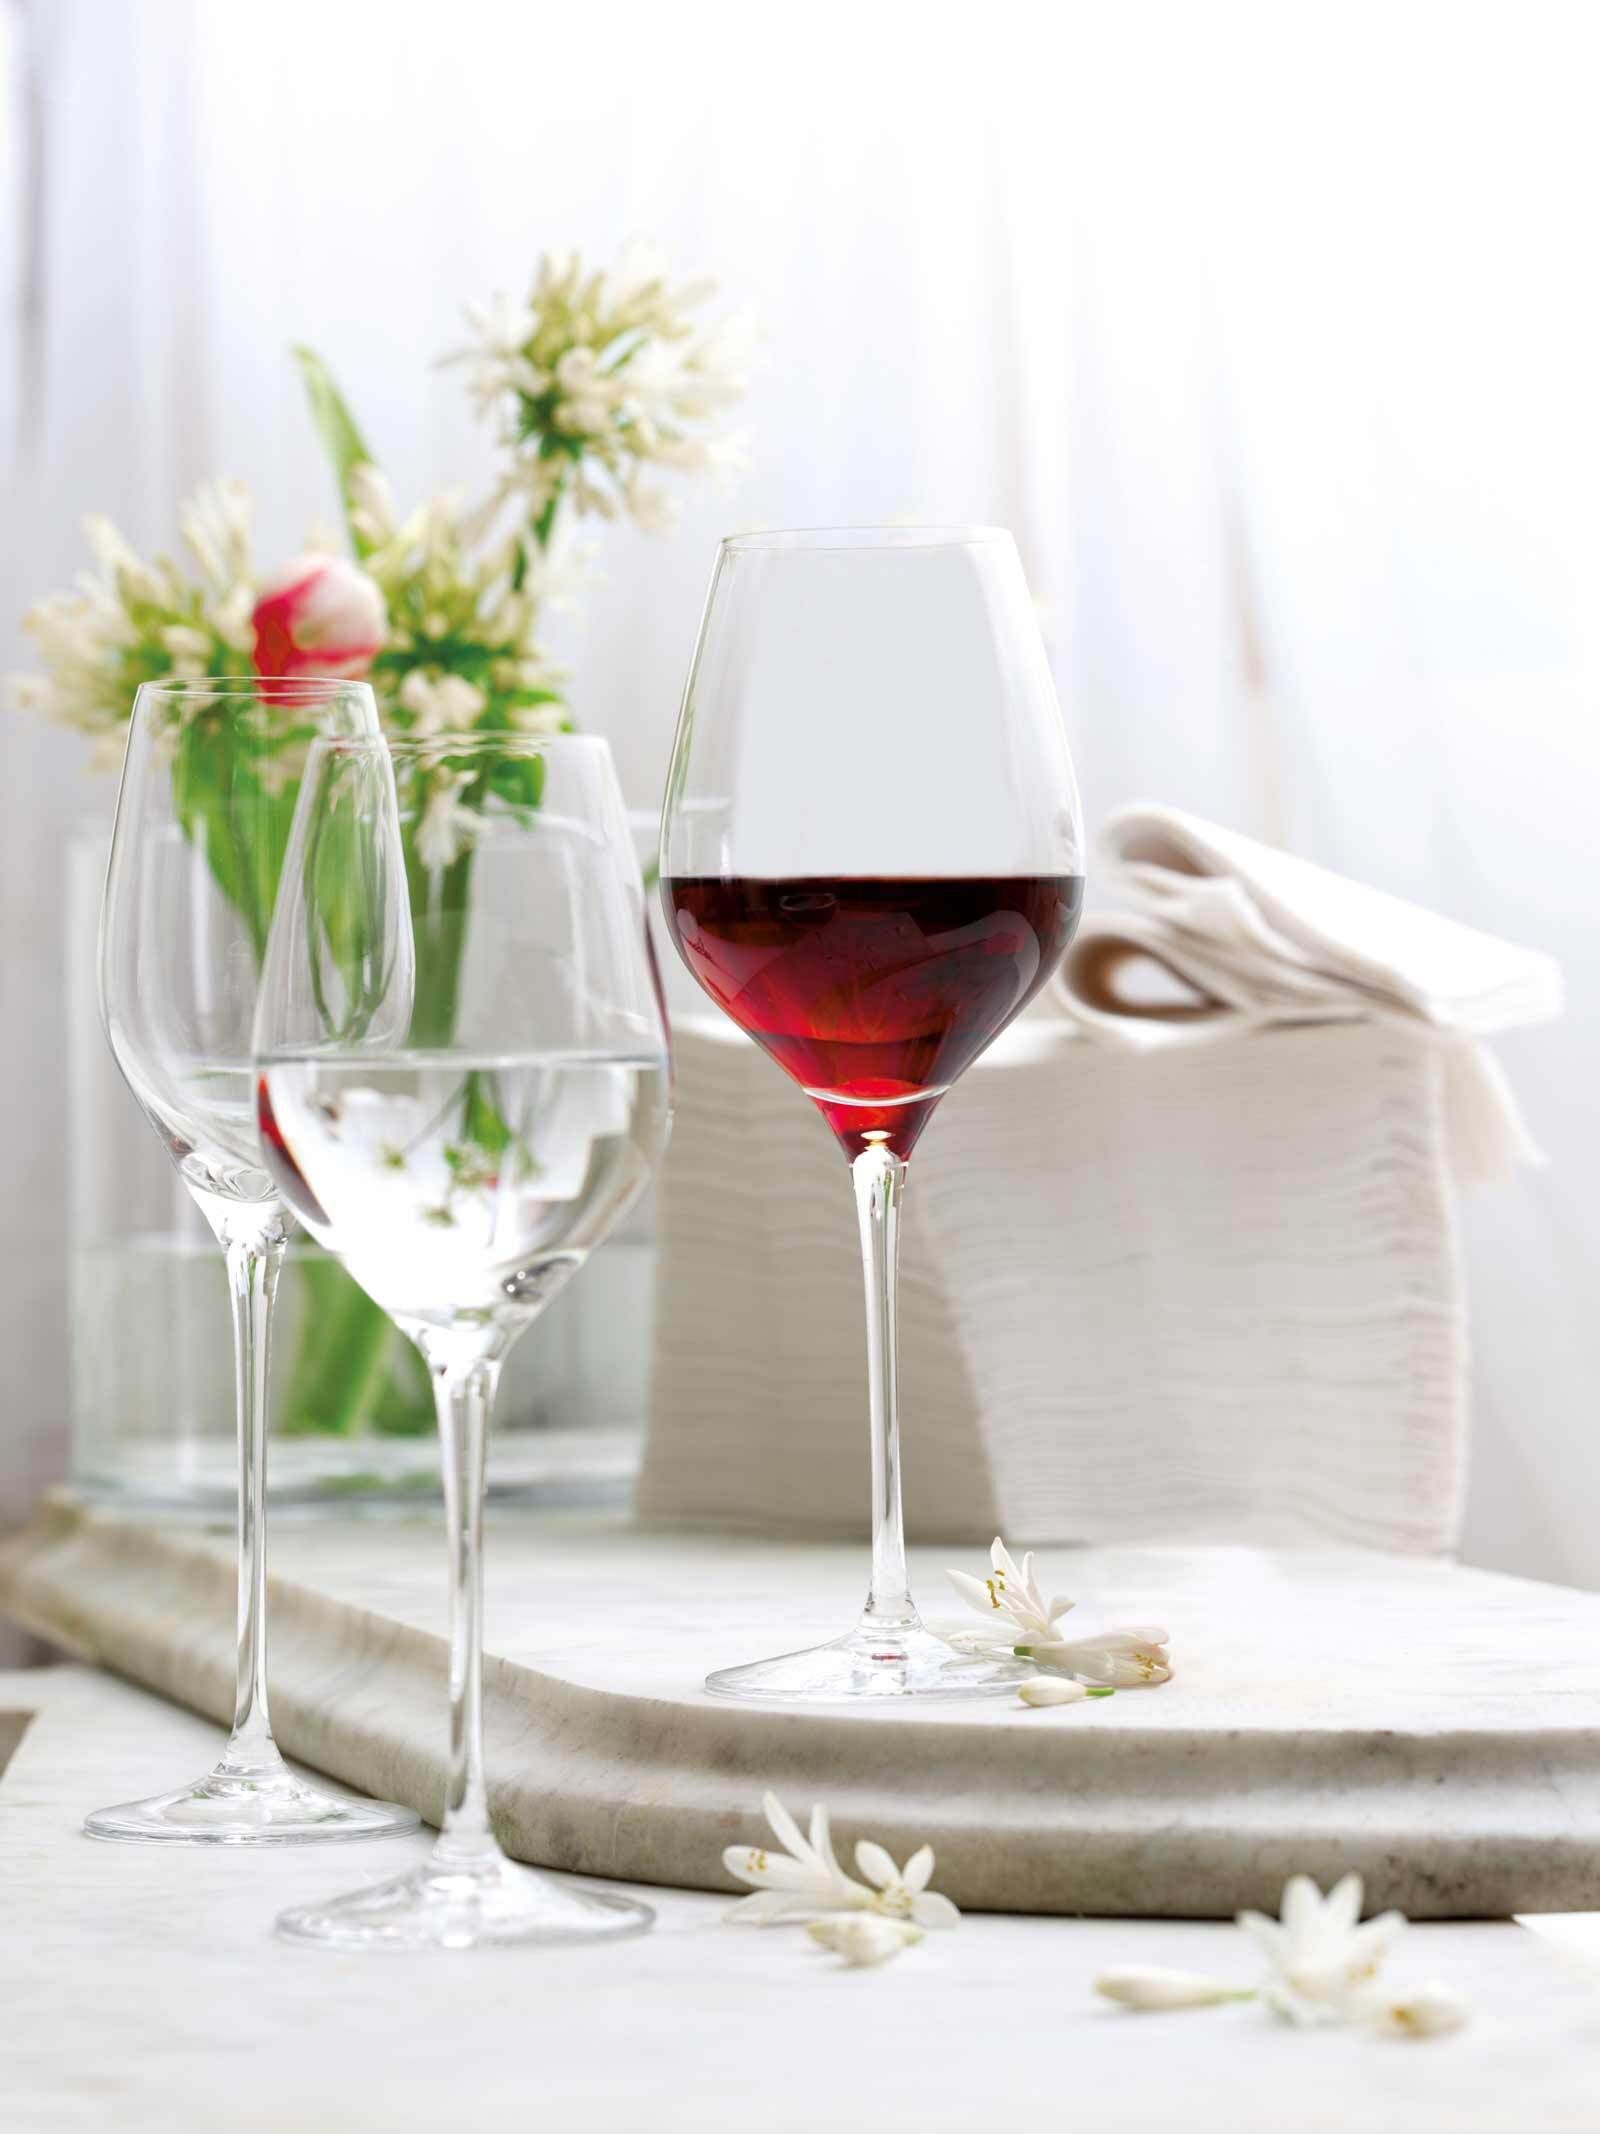 Royal Glas und Wein- Exquisit Glas Sektgläser Set, 18er Stölzle